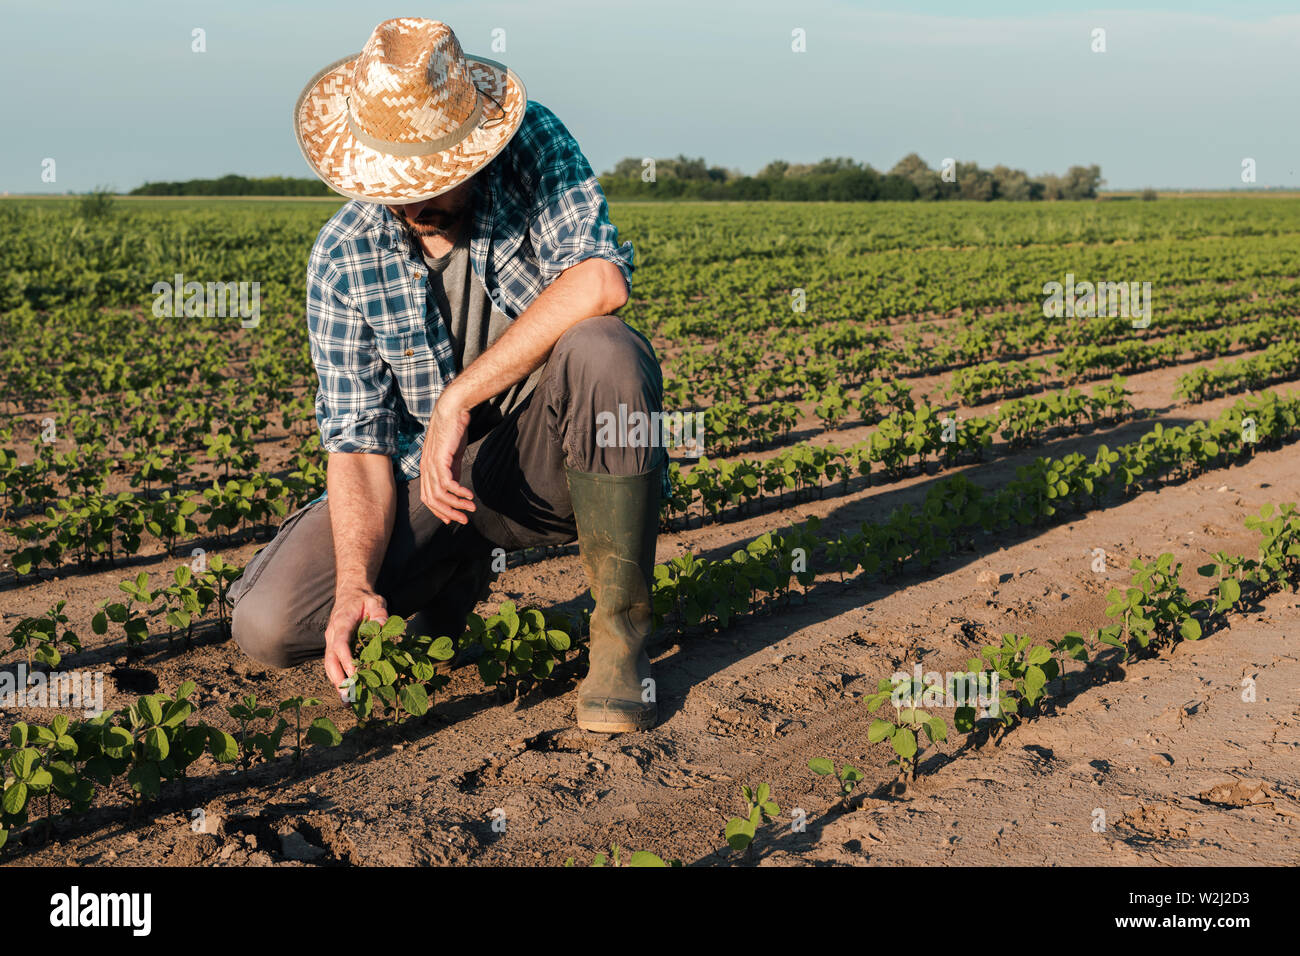 Bauern arbeiten auf sojabohne Plantage, Prüfung der Kulturen Entwicklung in frühen Entwicklungsstadien, die ökologische Landwirtschaft von Soja Pflanzen. Stockfoto